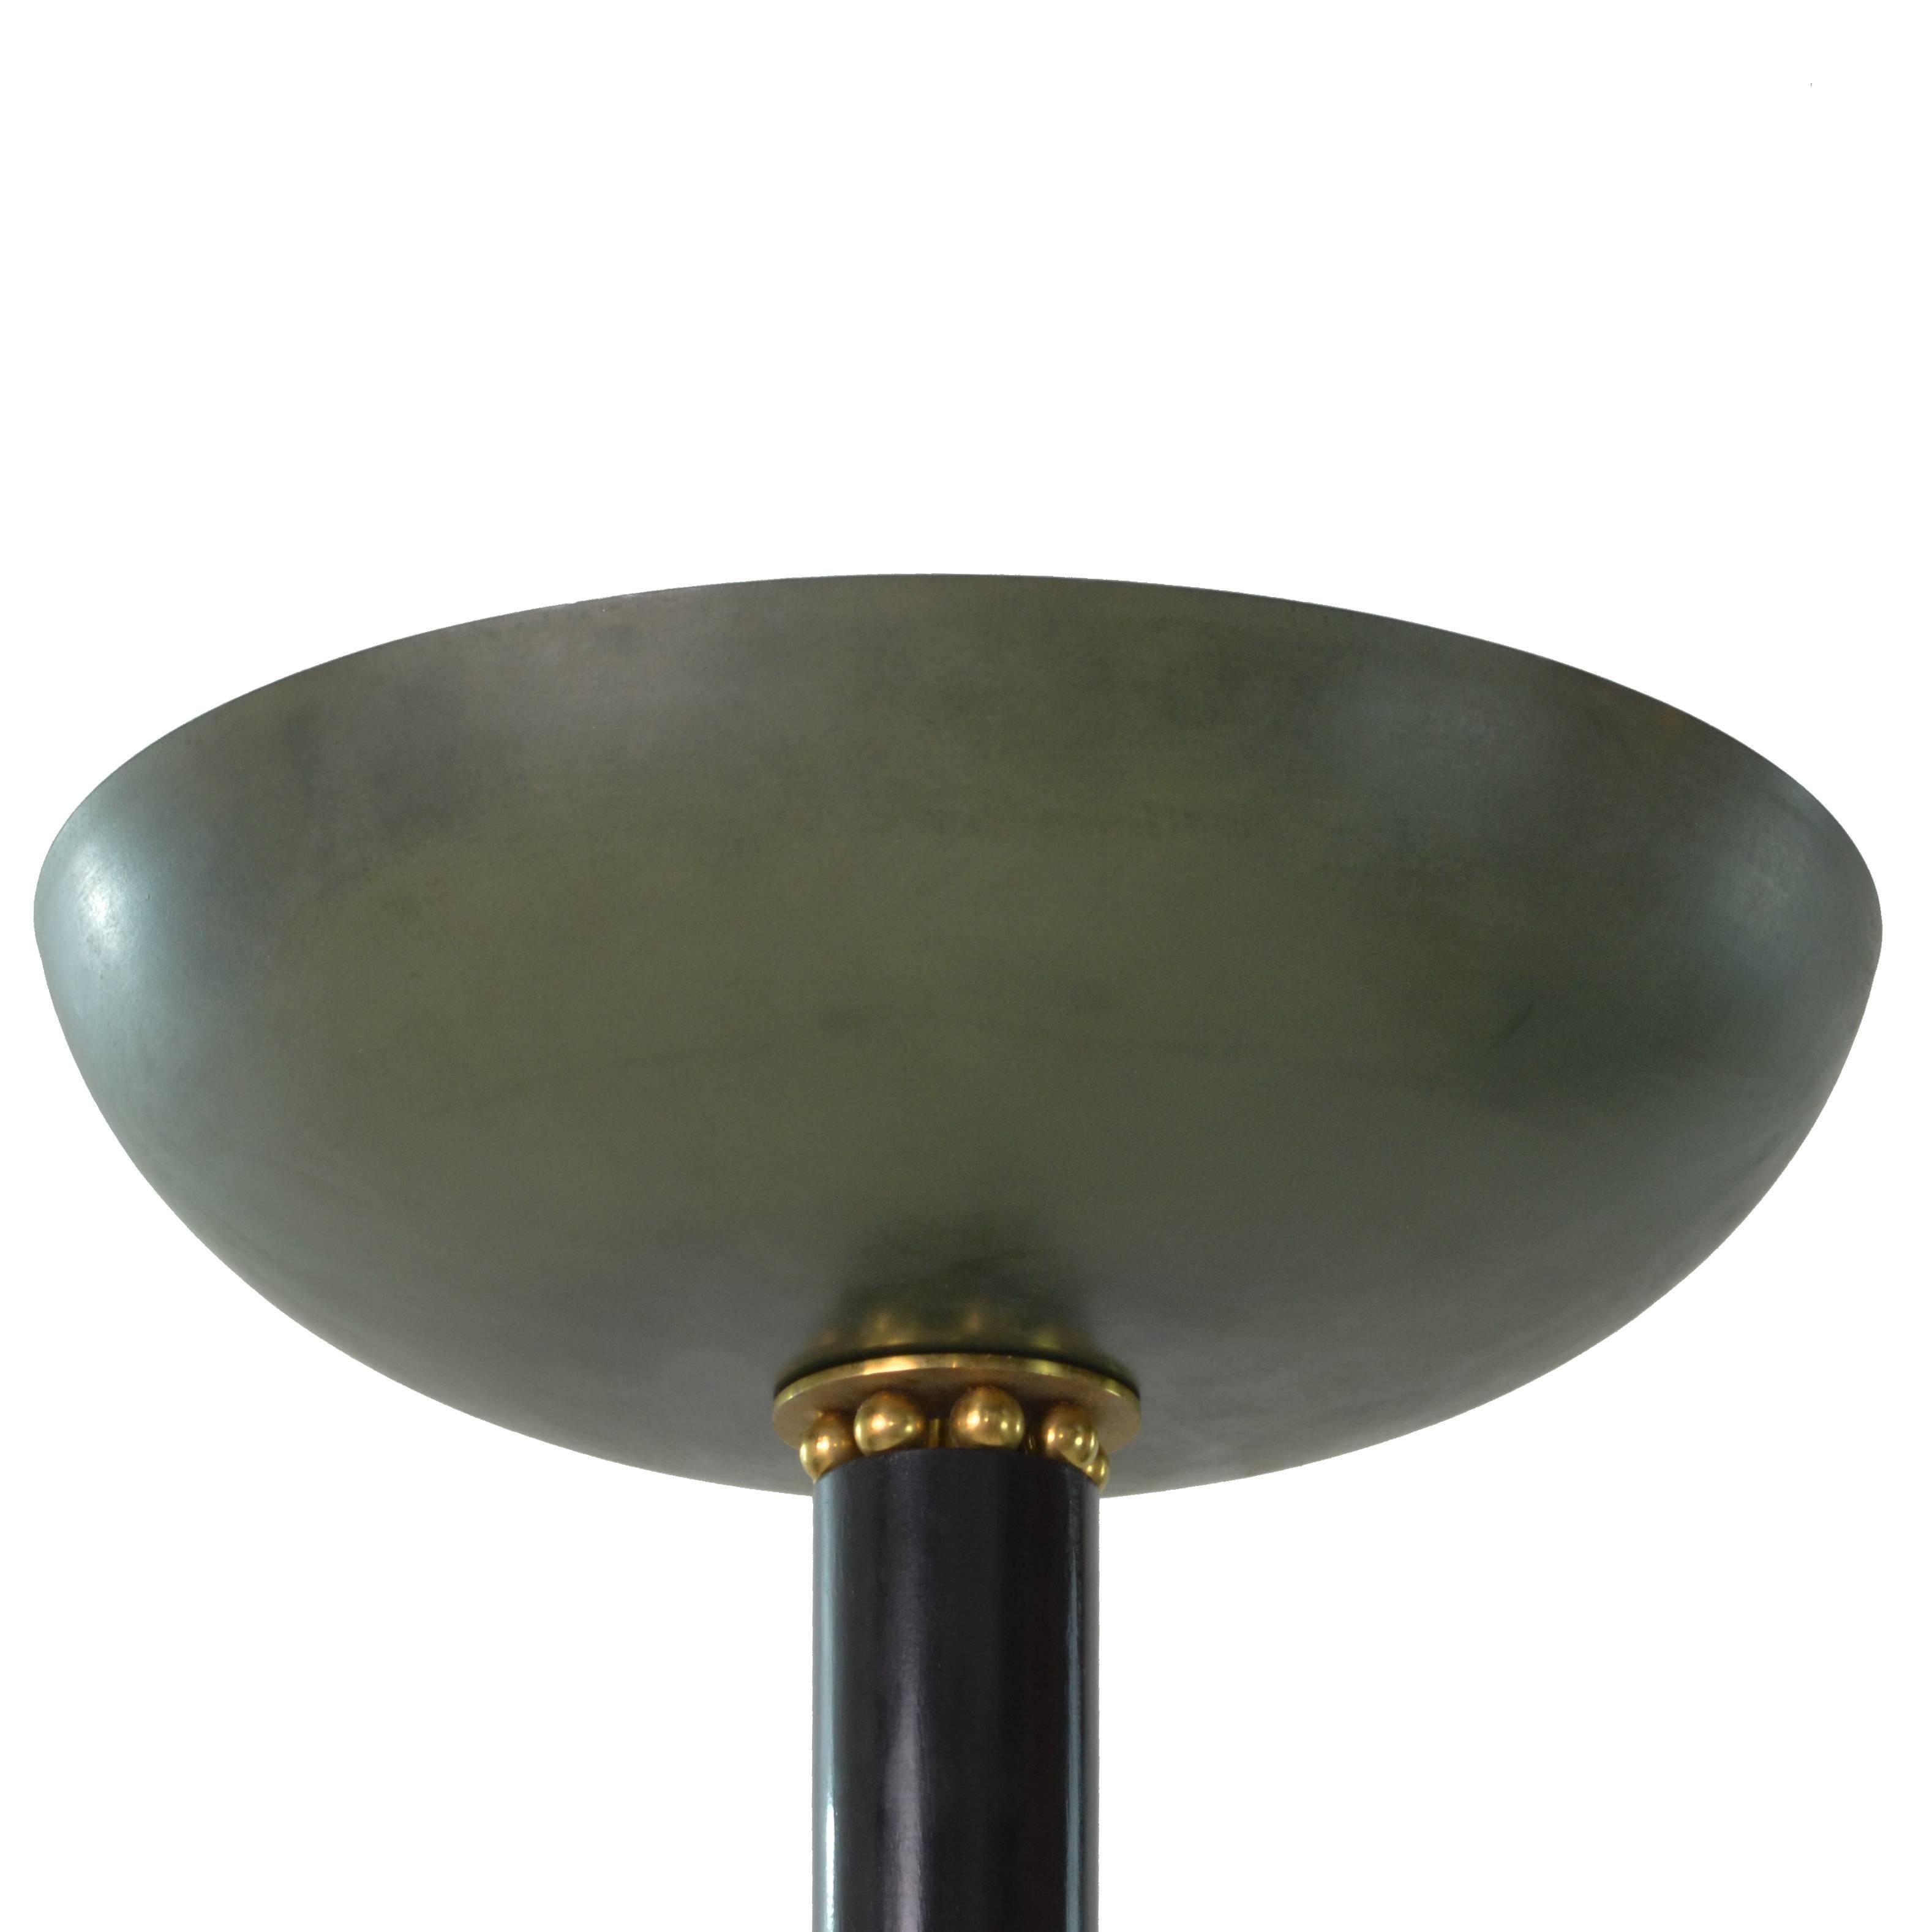 Ebonized Art Deco Green Rounded Shade Golden Brass detail Floor Lamp, France 1930s 